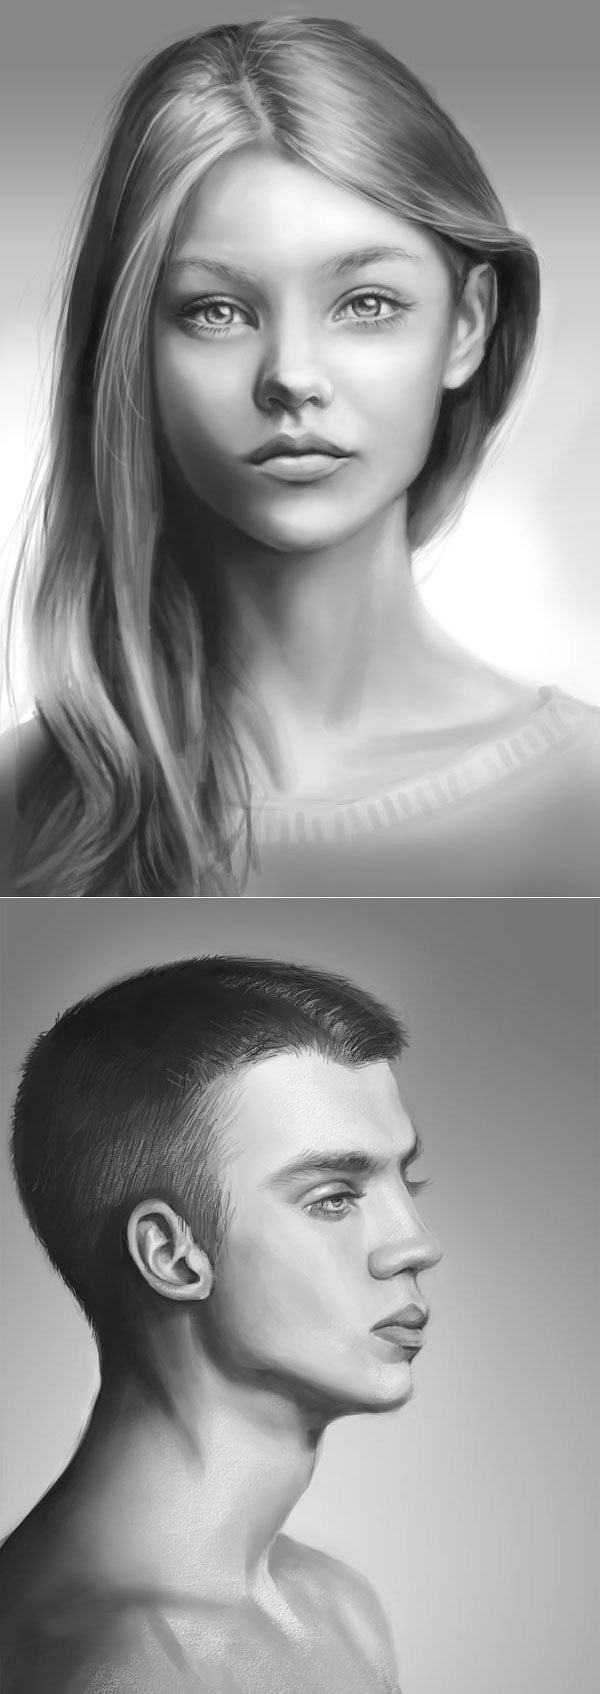 Создание карандашного портрета в Adobe Photoshop · Мир Фотошопа